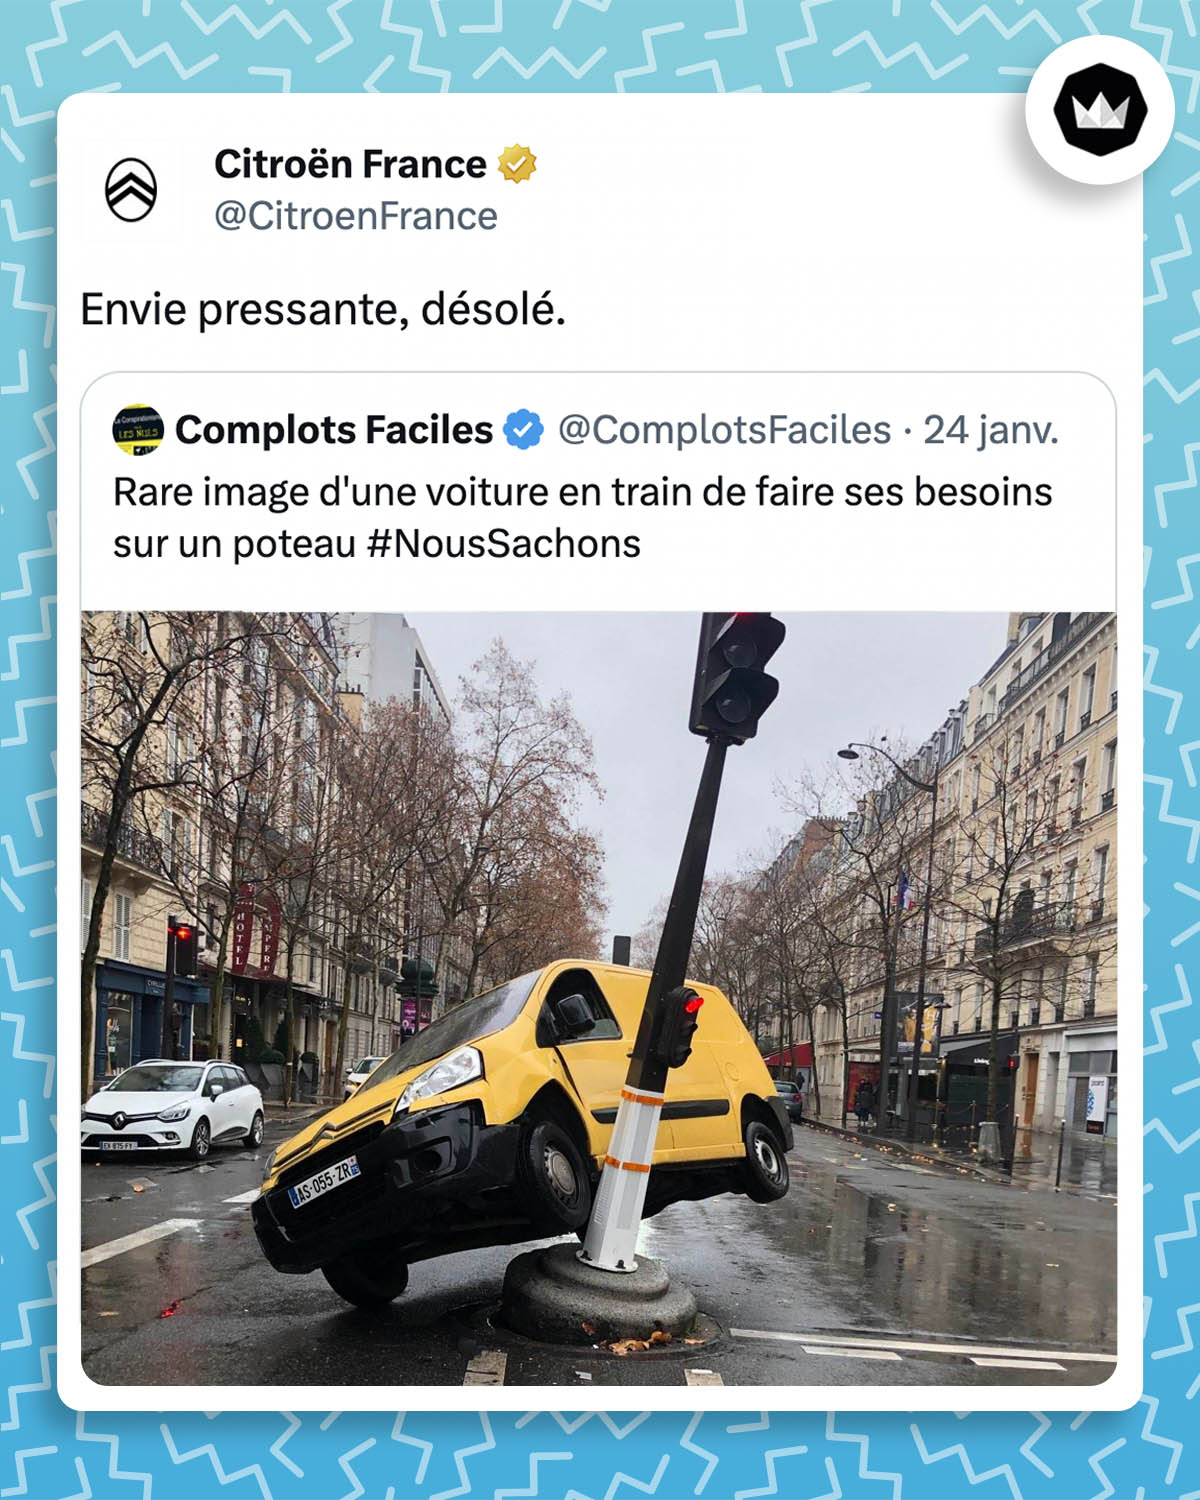 tweet de Citroën France : "Envie pressante, désolé." Il répond au tweet d'un internaute qui a publié une photo d'un véhicule appuyé sur un poteau de feu de la route : "Rare image d'une voiture en train de faire ses besoins sur un poteau #NousSachons"